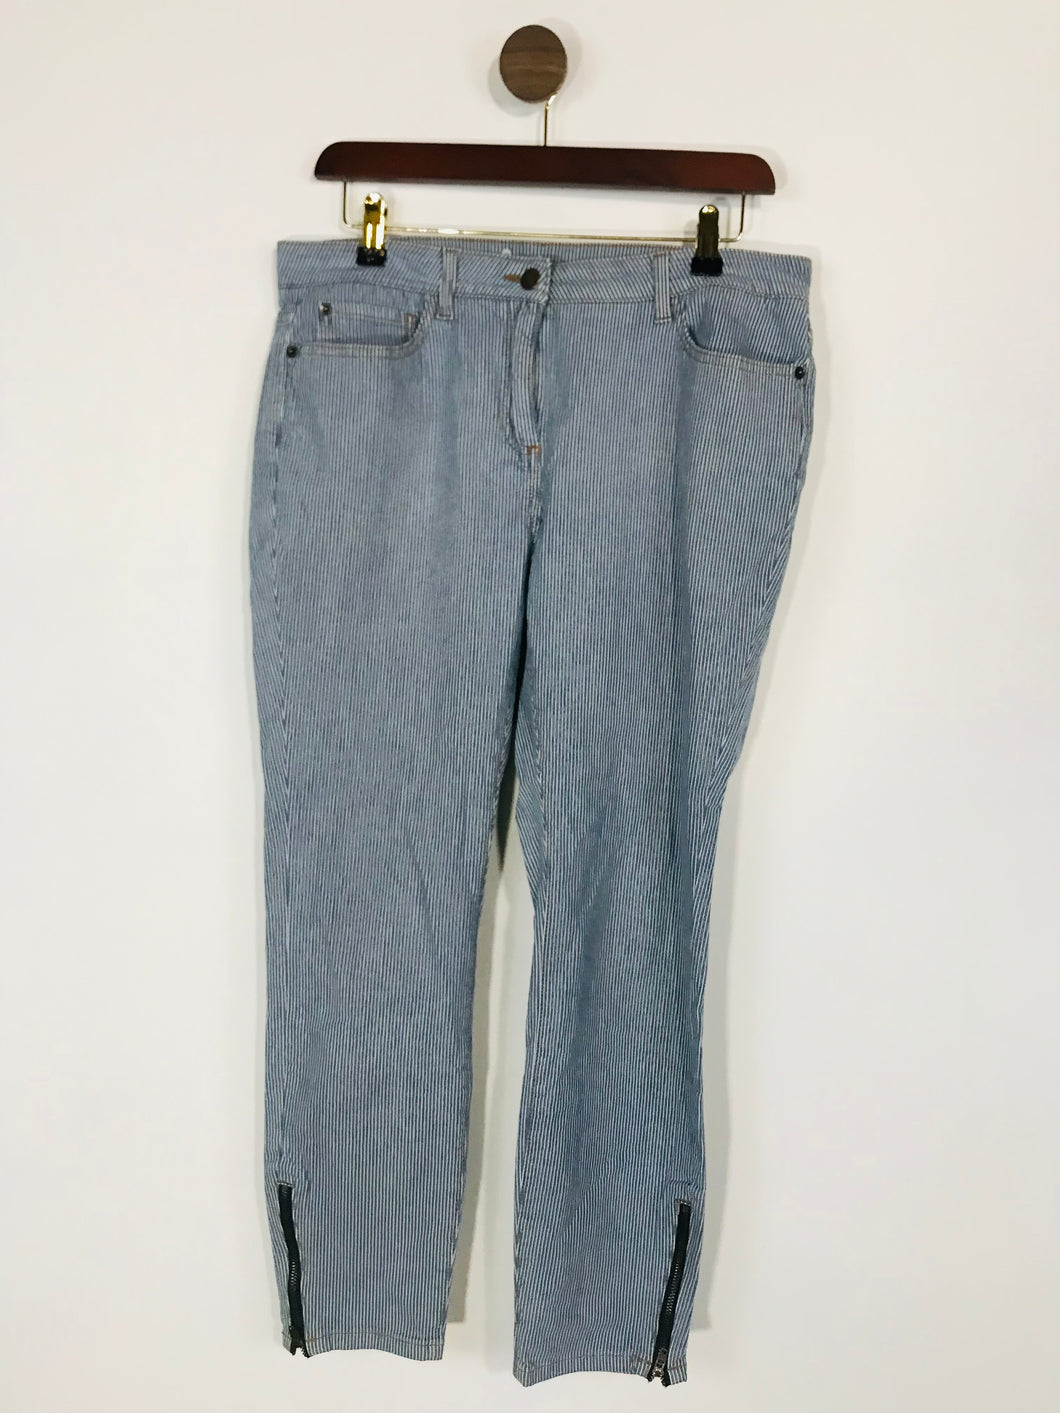 Boden Women's Striped Skinny Jeans | UK14 | Blue